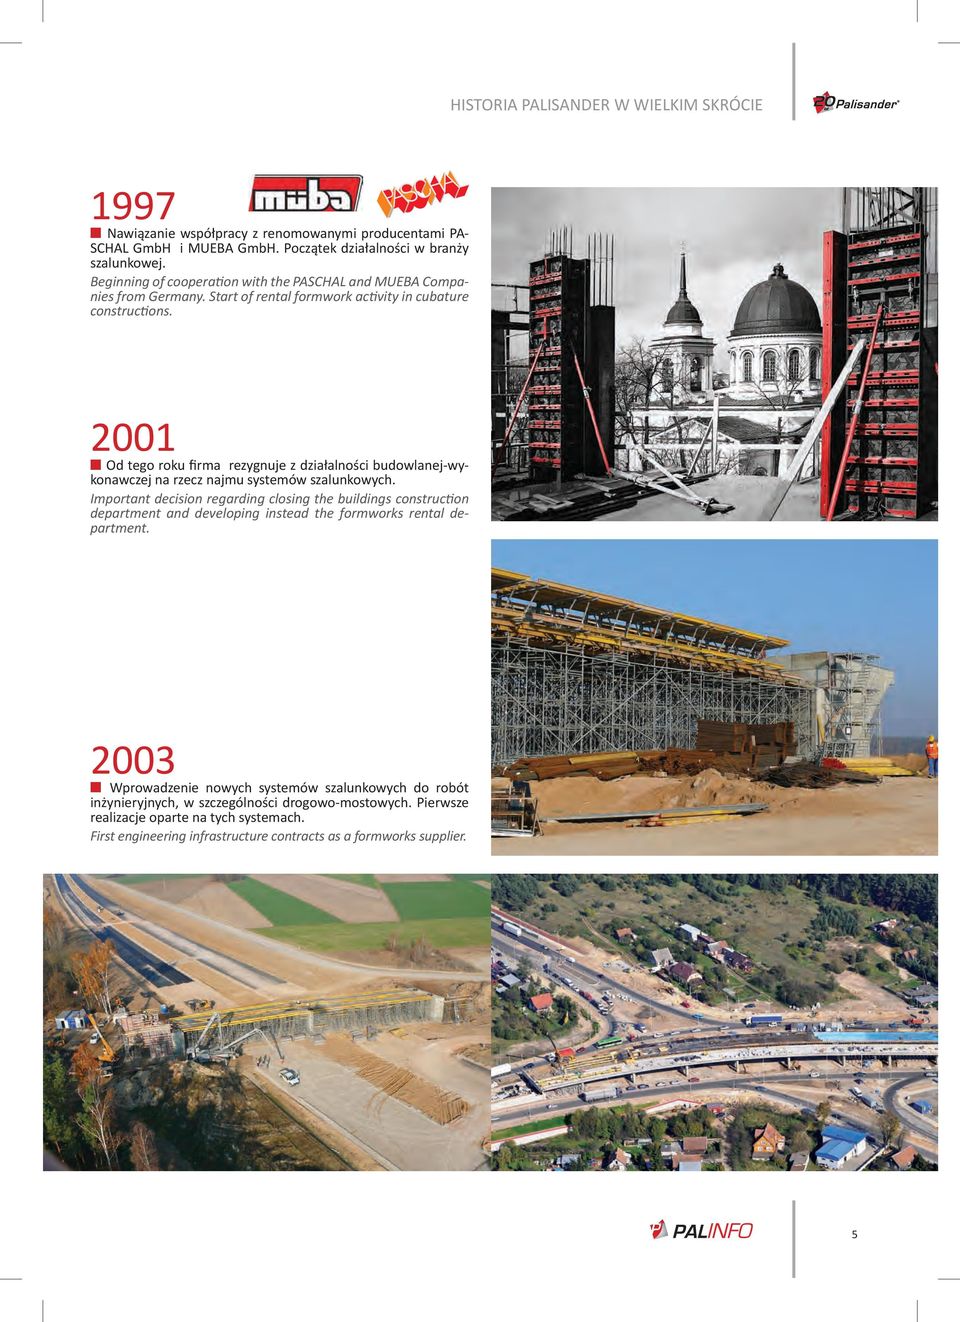 2001 Od tego roku firma rezygnuje z działalności budowlanej-wykonawczej na rzecz najmu systemów szalunkowych.